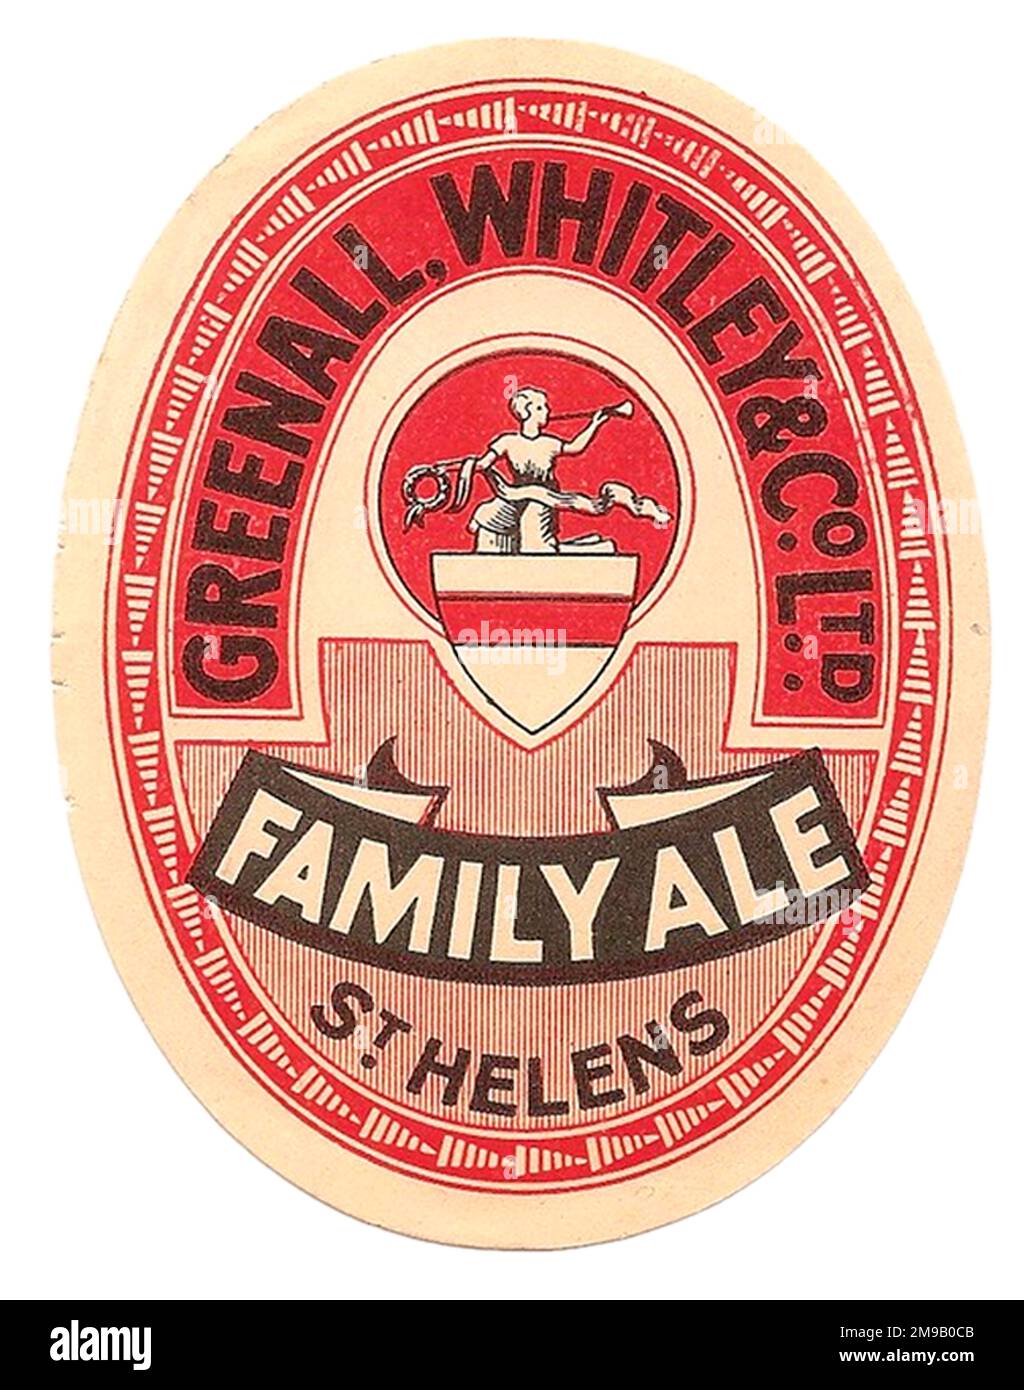 Greenall's Family Ale Stock Photo